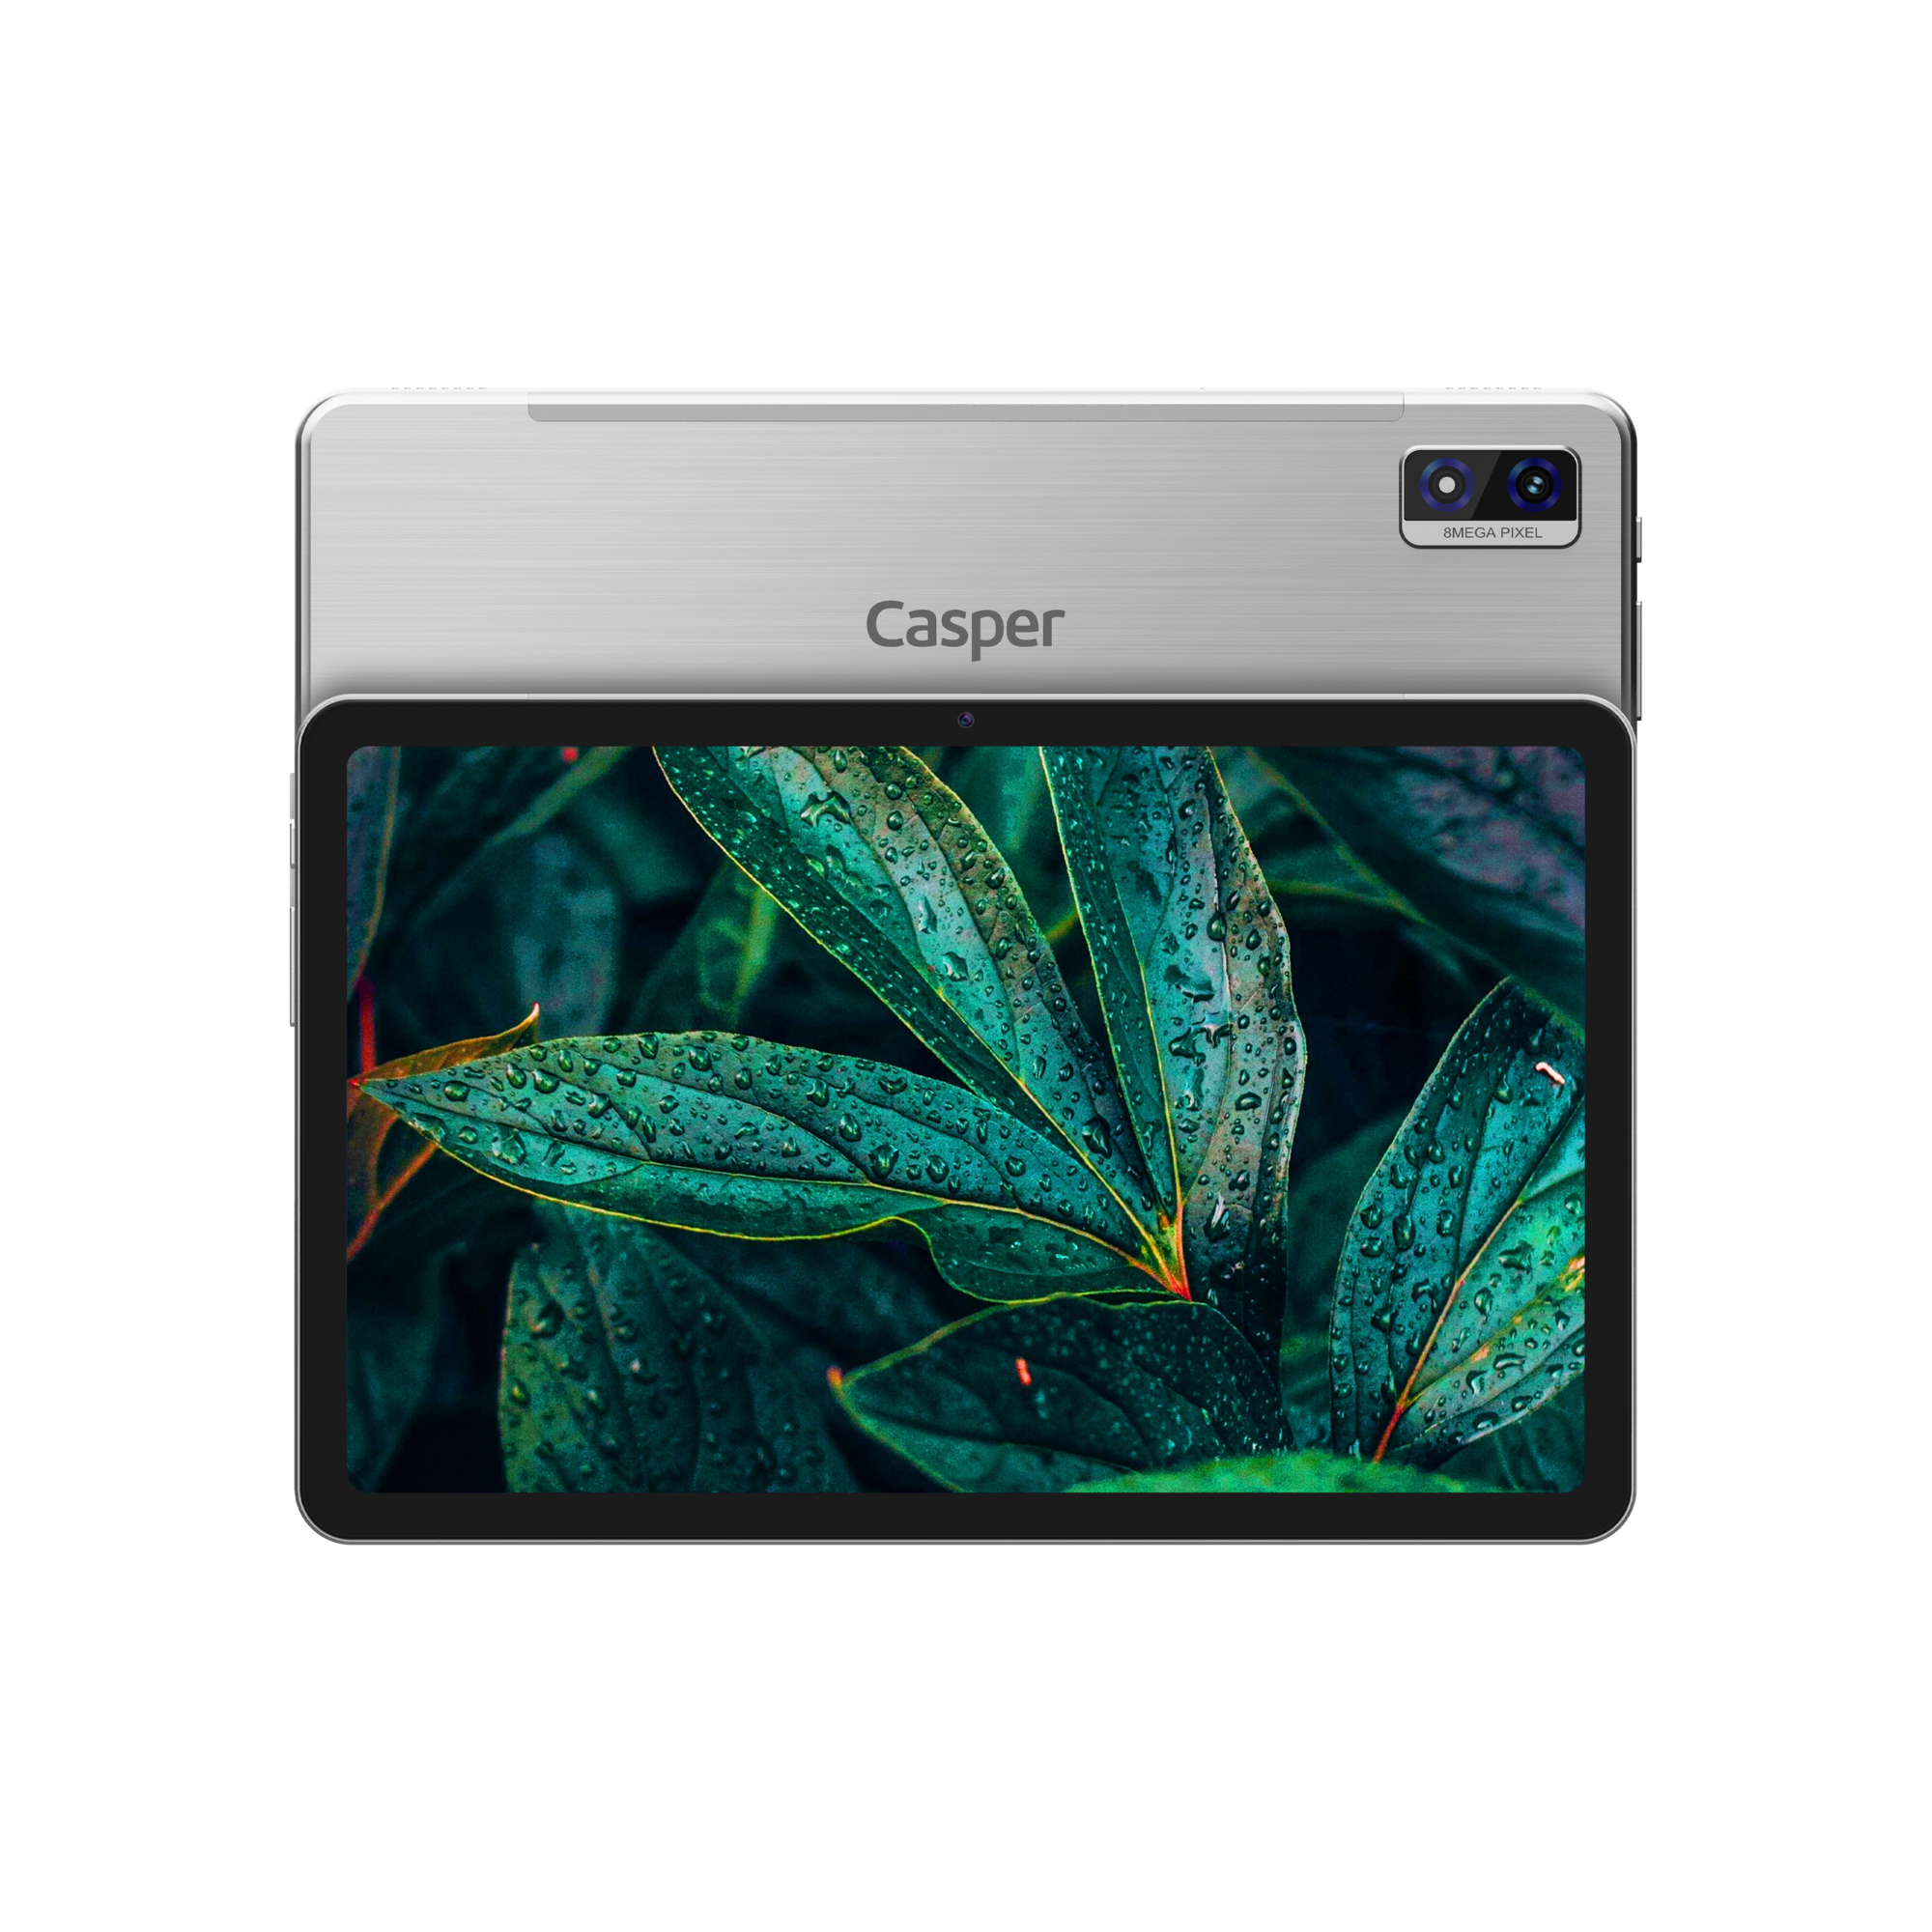 Casper VIA L40 8-128 GB Tablet Gümüş Tablet